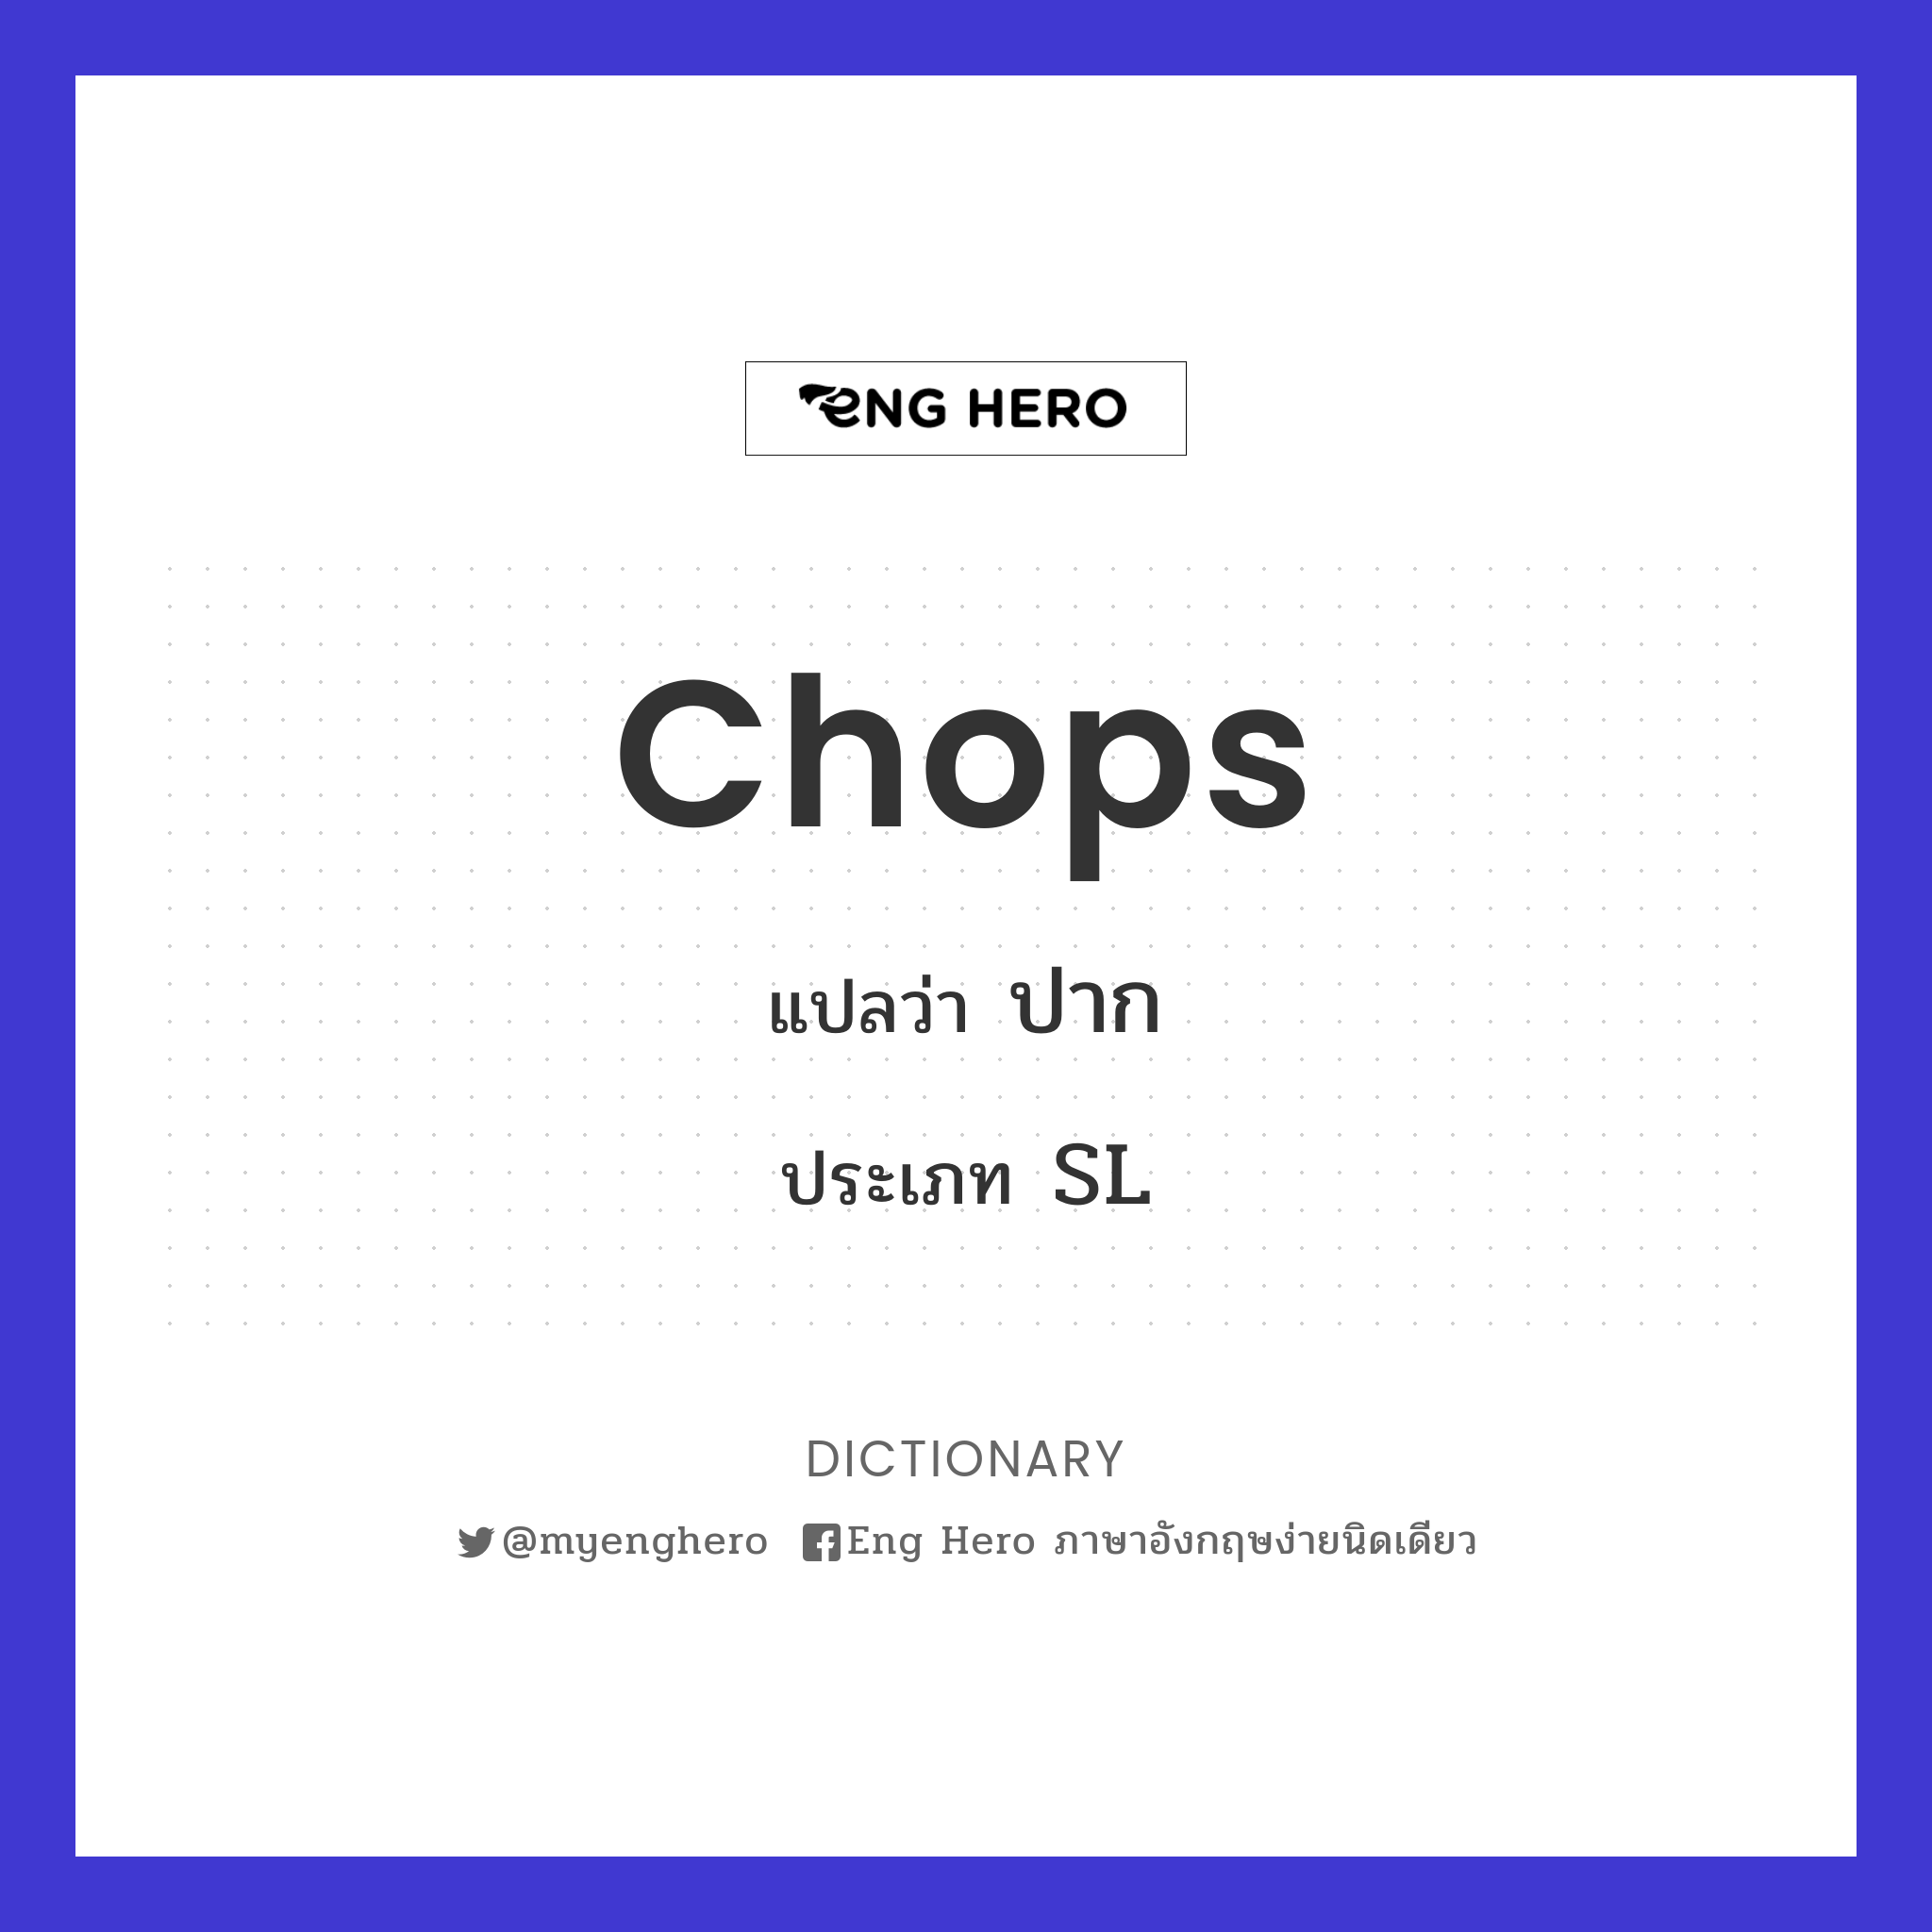 chops